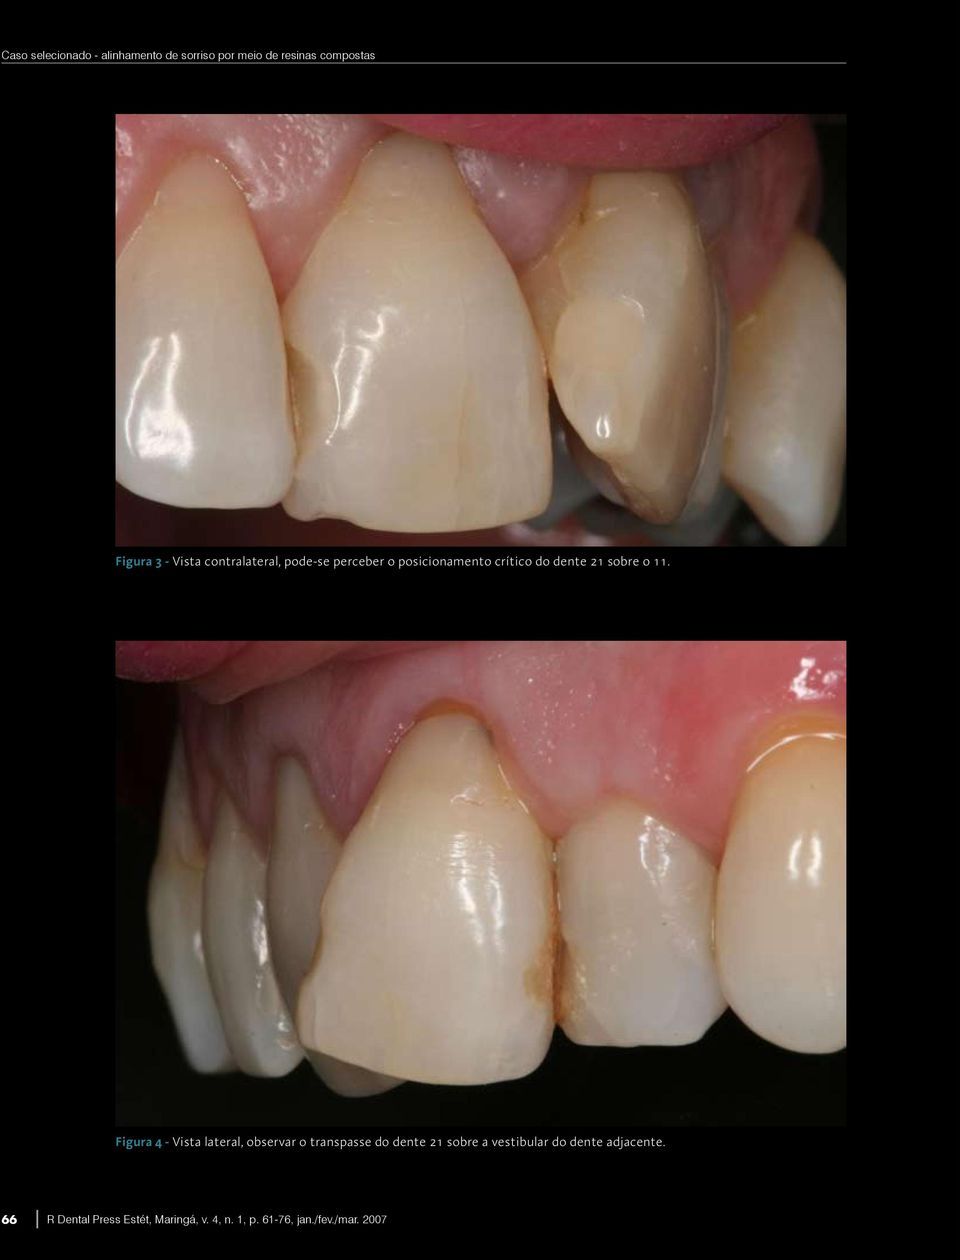 Figura 4 - Vista lateral, observar o transpasse do dente 21 sobre a vestibular do